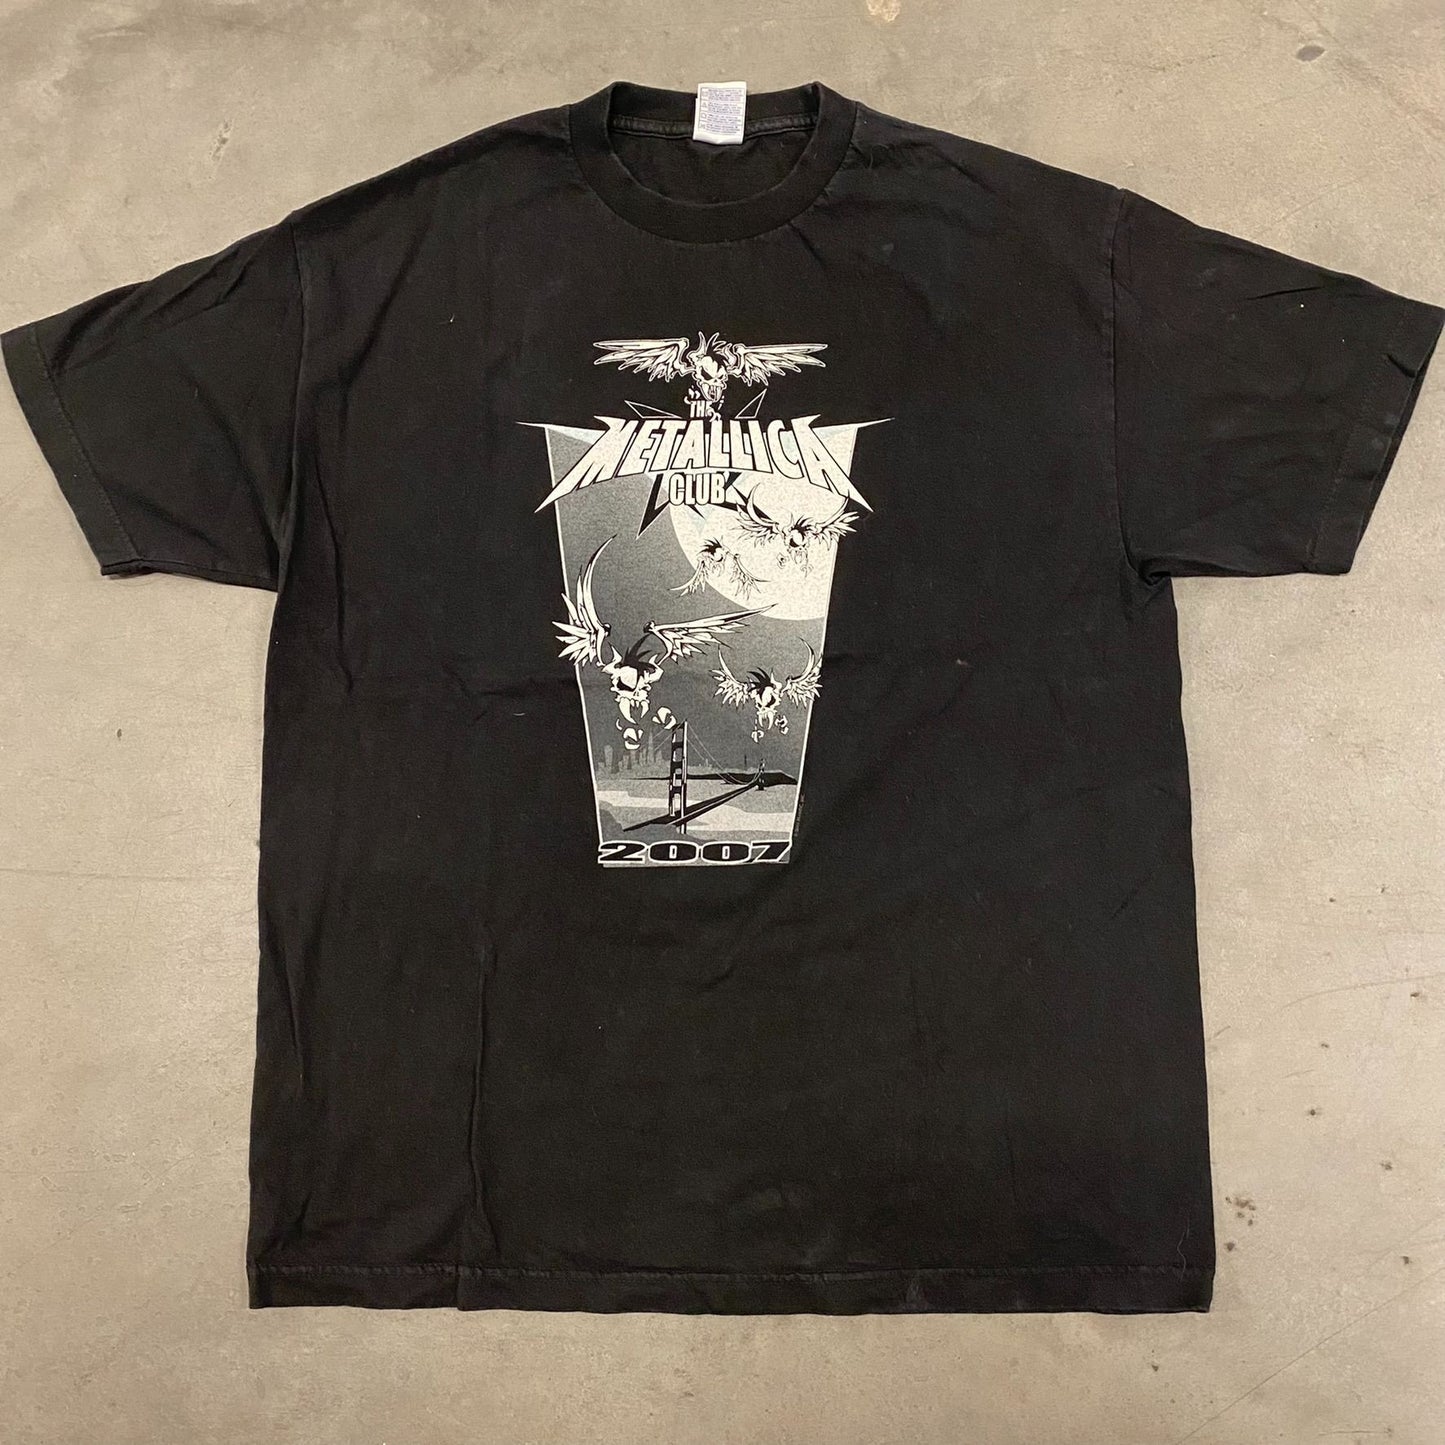 Metallica Club Vintage Skull T-Shirt